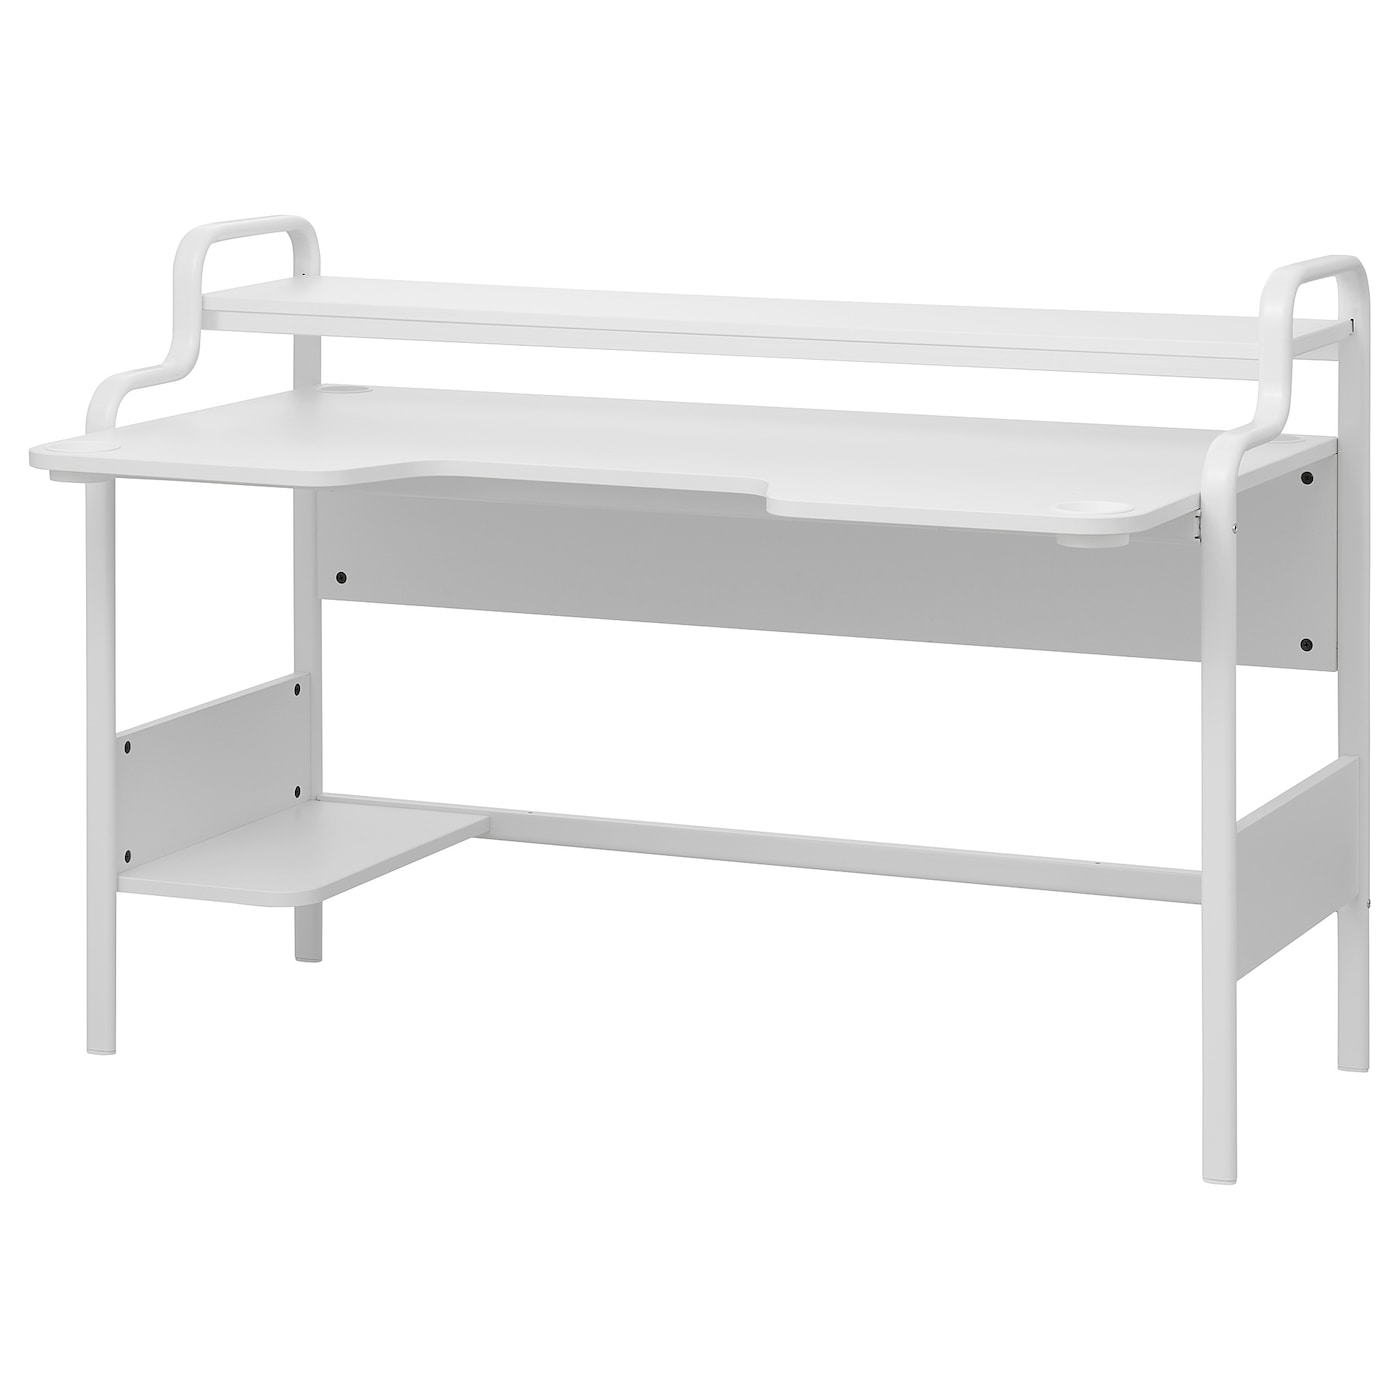 Письменный стол - IKEA FREDDE, 140х74 см, белый, ФРЕДДЕ ИКЕА